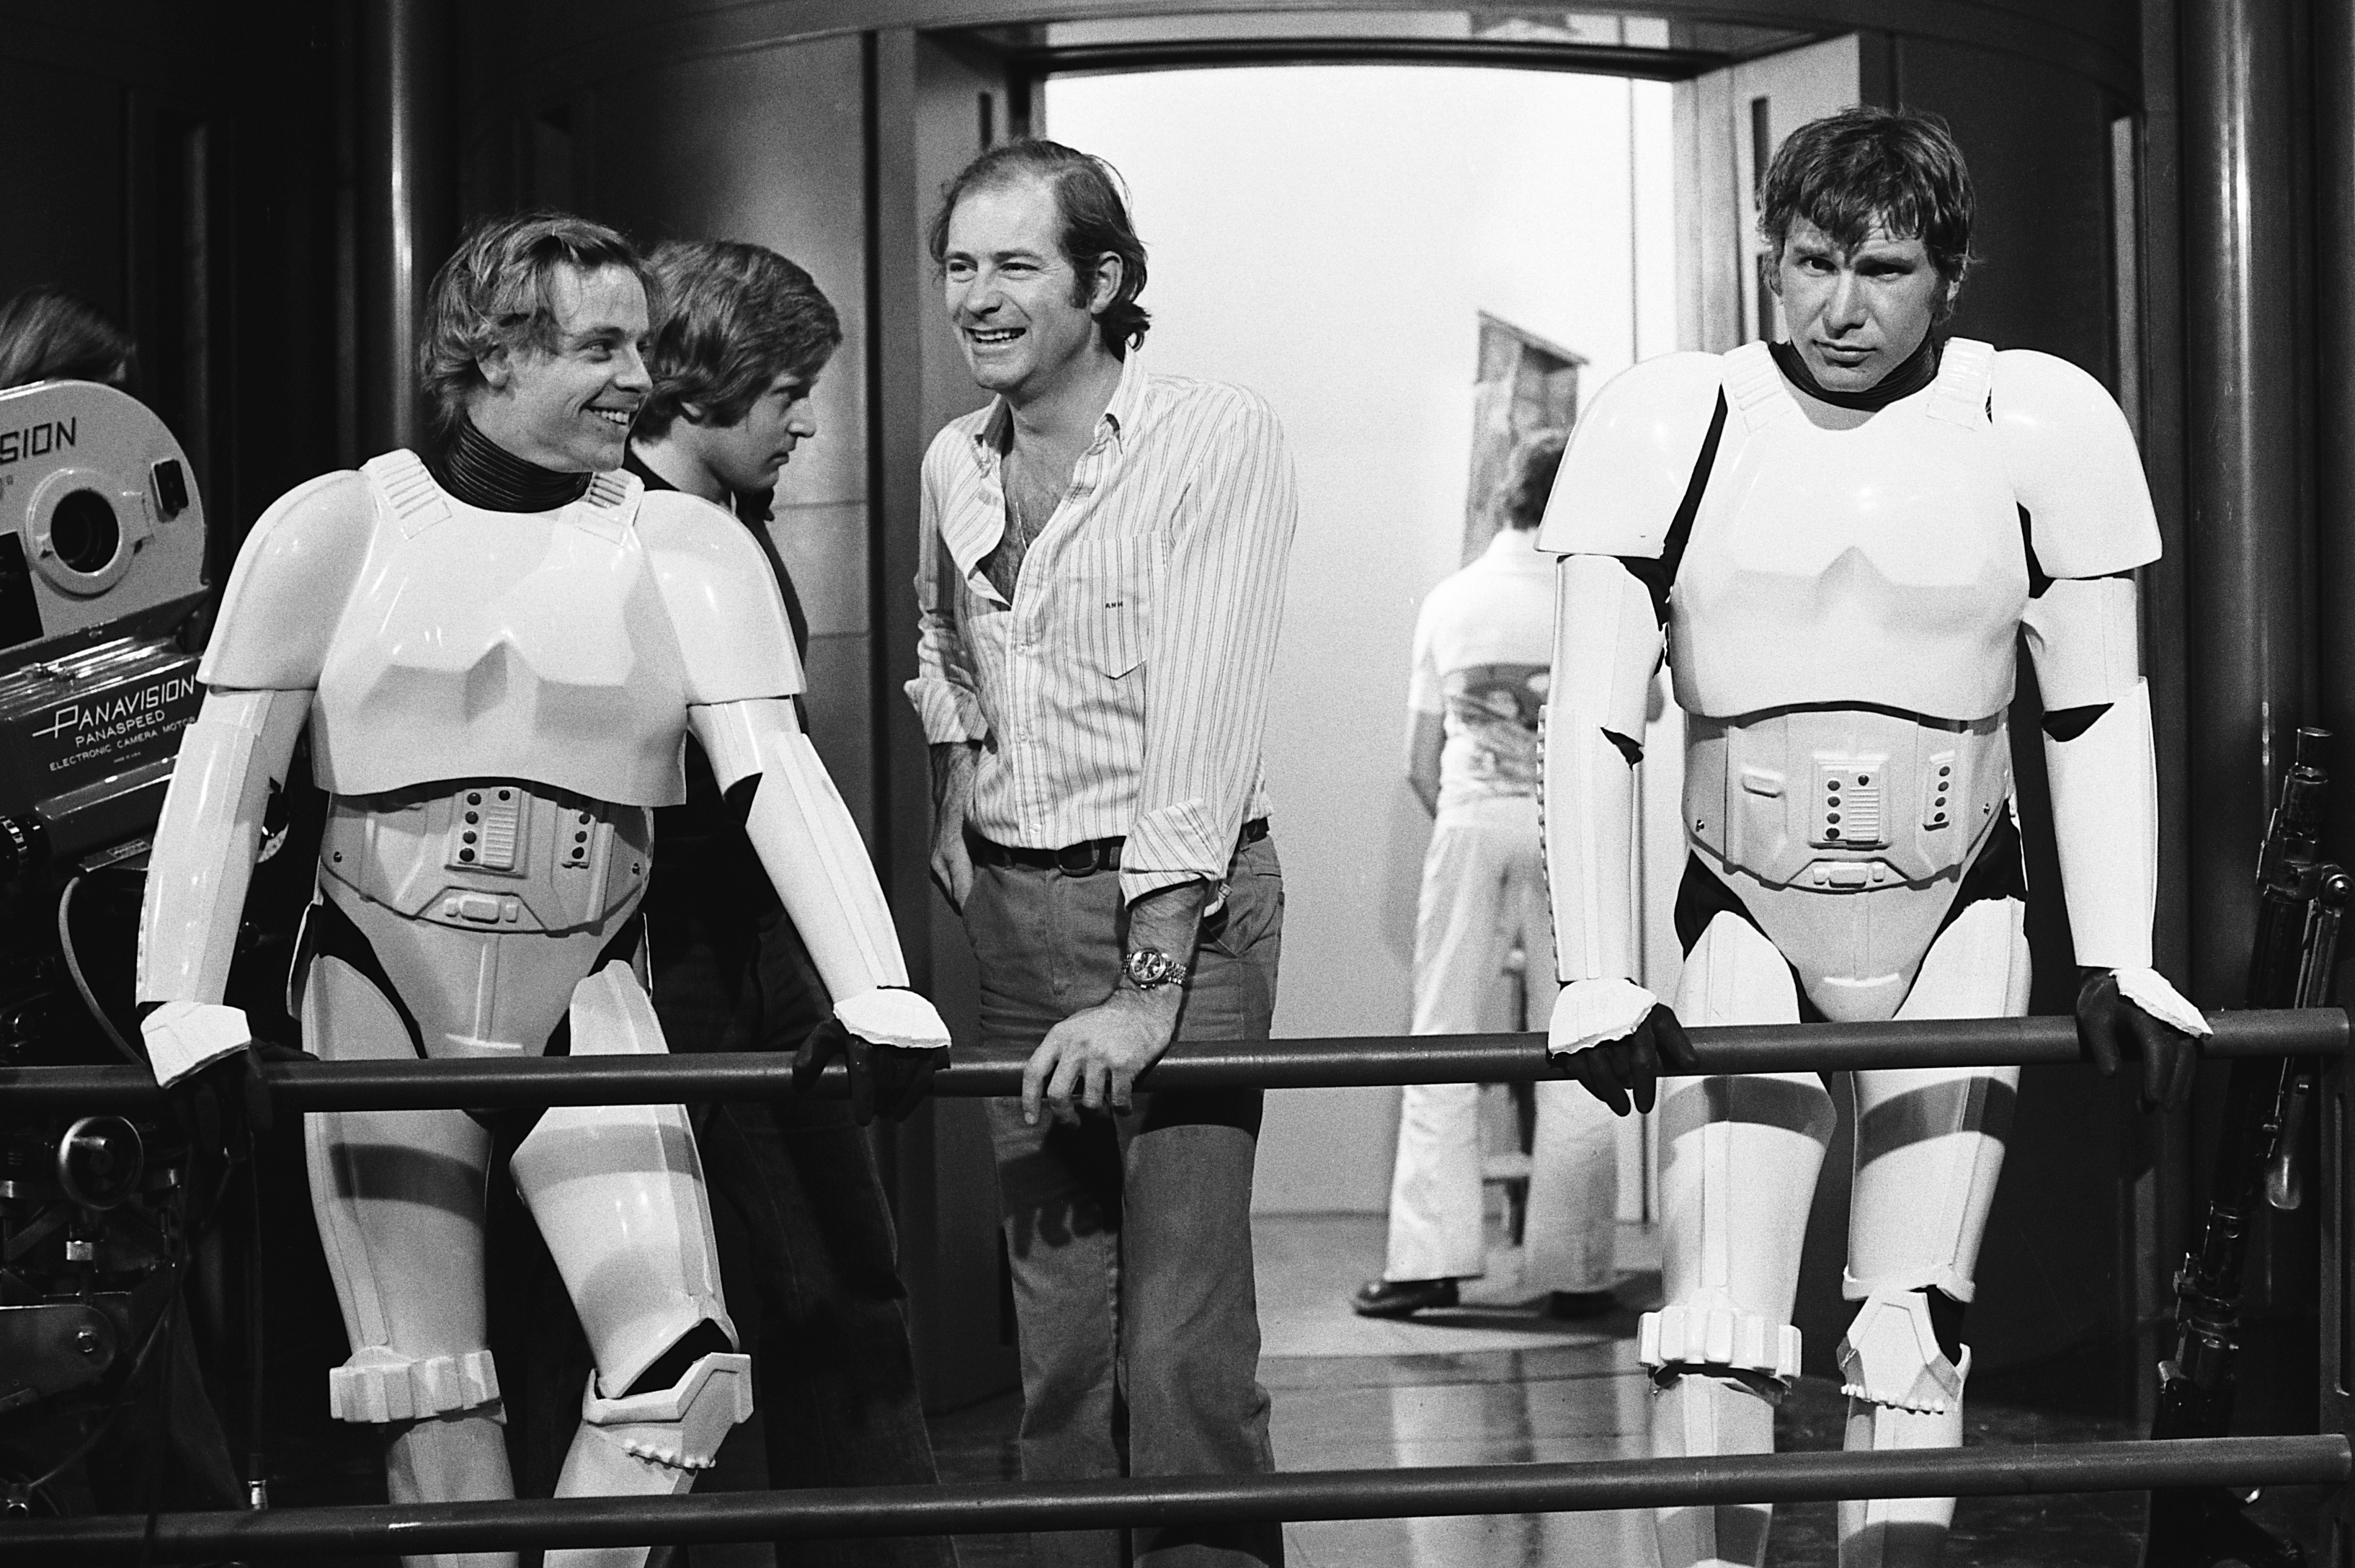 Luke Skywalker and Han Solo